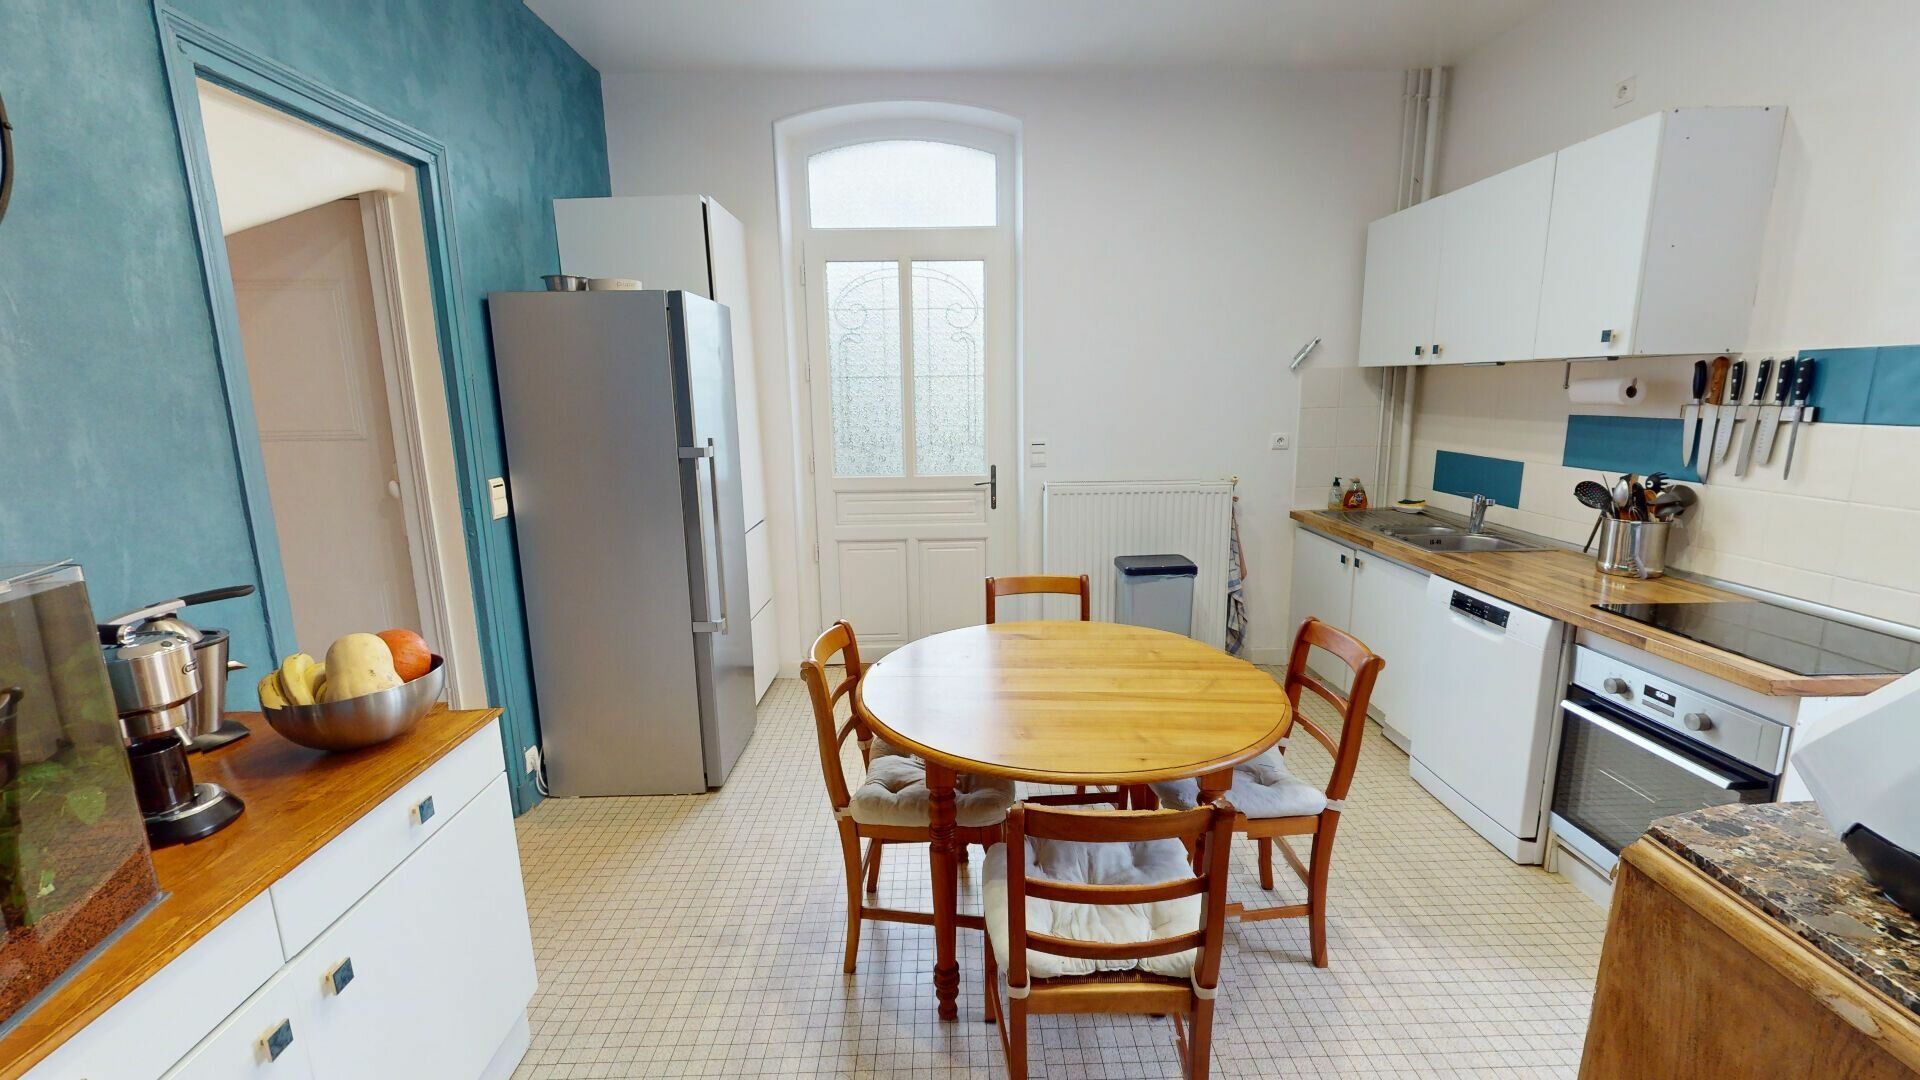 Maison à vendre 6 170m2 à Vernou-la-Celle-sur-Seine vignette-4